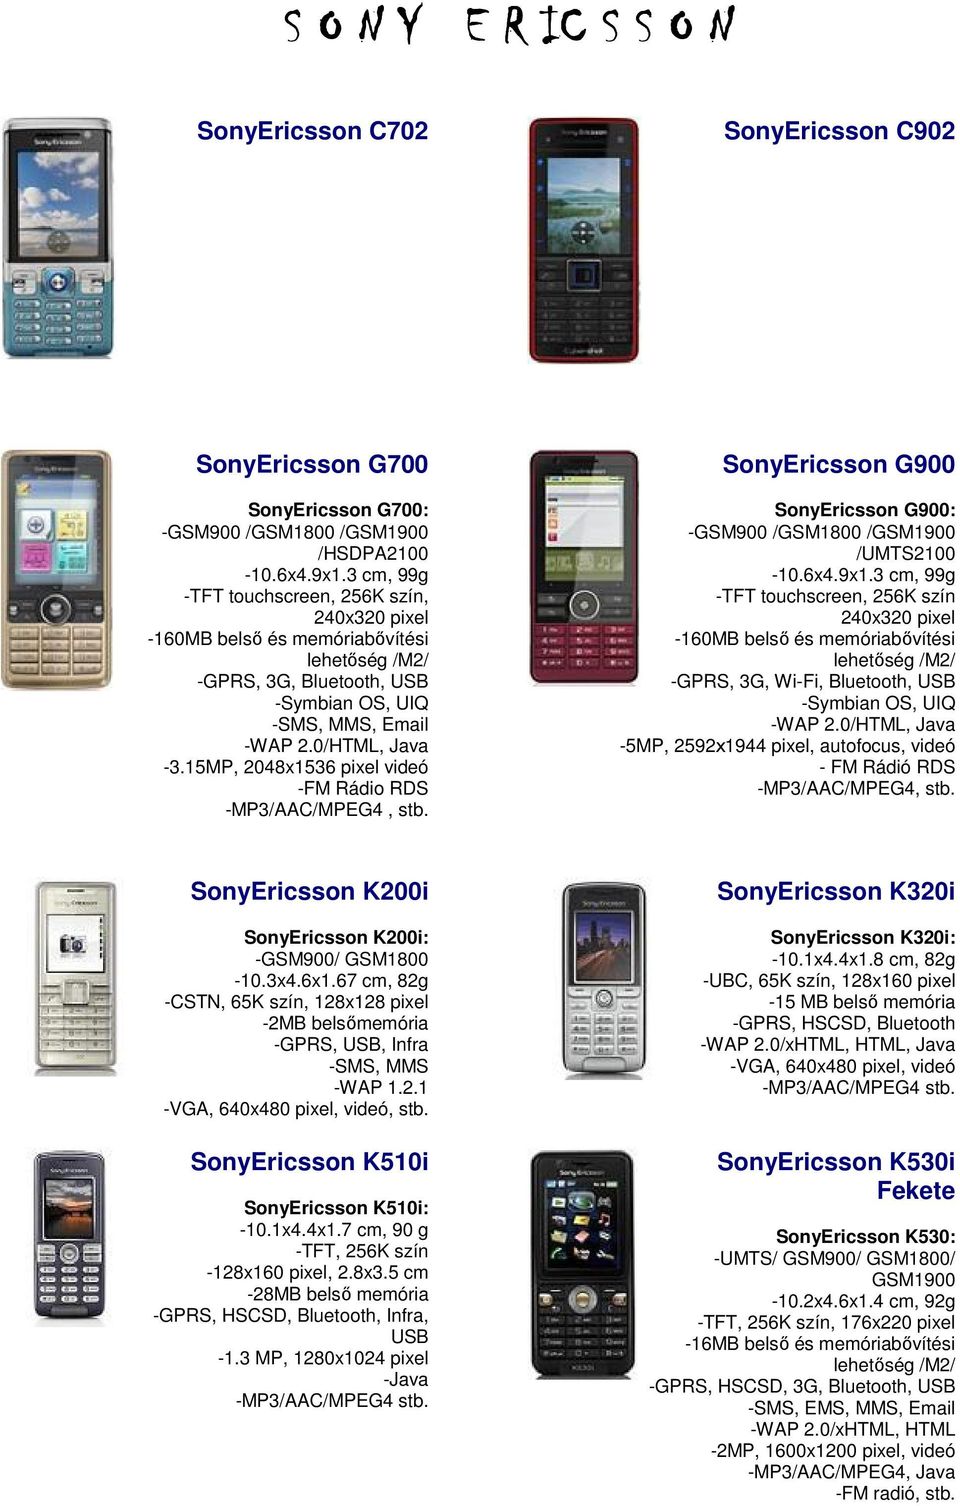 G900 G900: -GSM900 /GSM1800 / /UMTS2100-10.6x4.9x1.